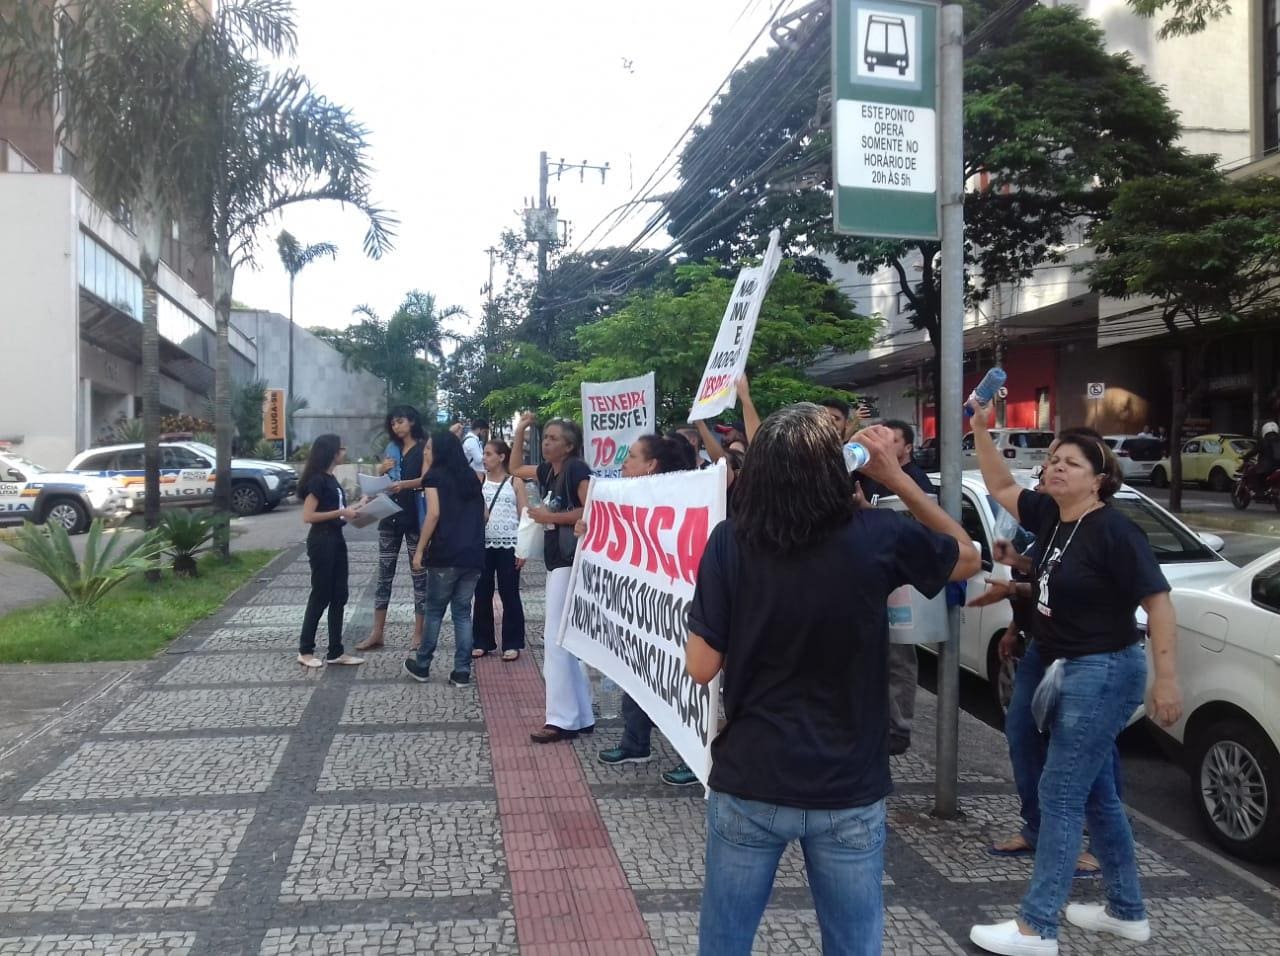 Cerca de 40 moradores do Santa Tereza manifestaram com faixas e cartazes do lado de fora, gritando “Teixeira Duarte resiste”